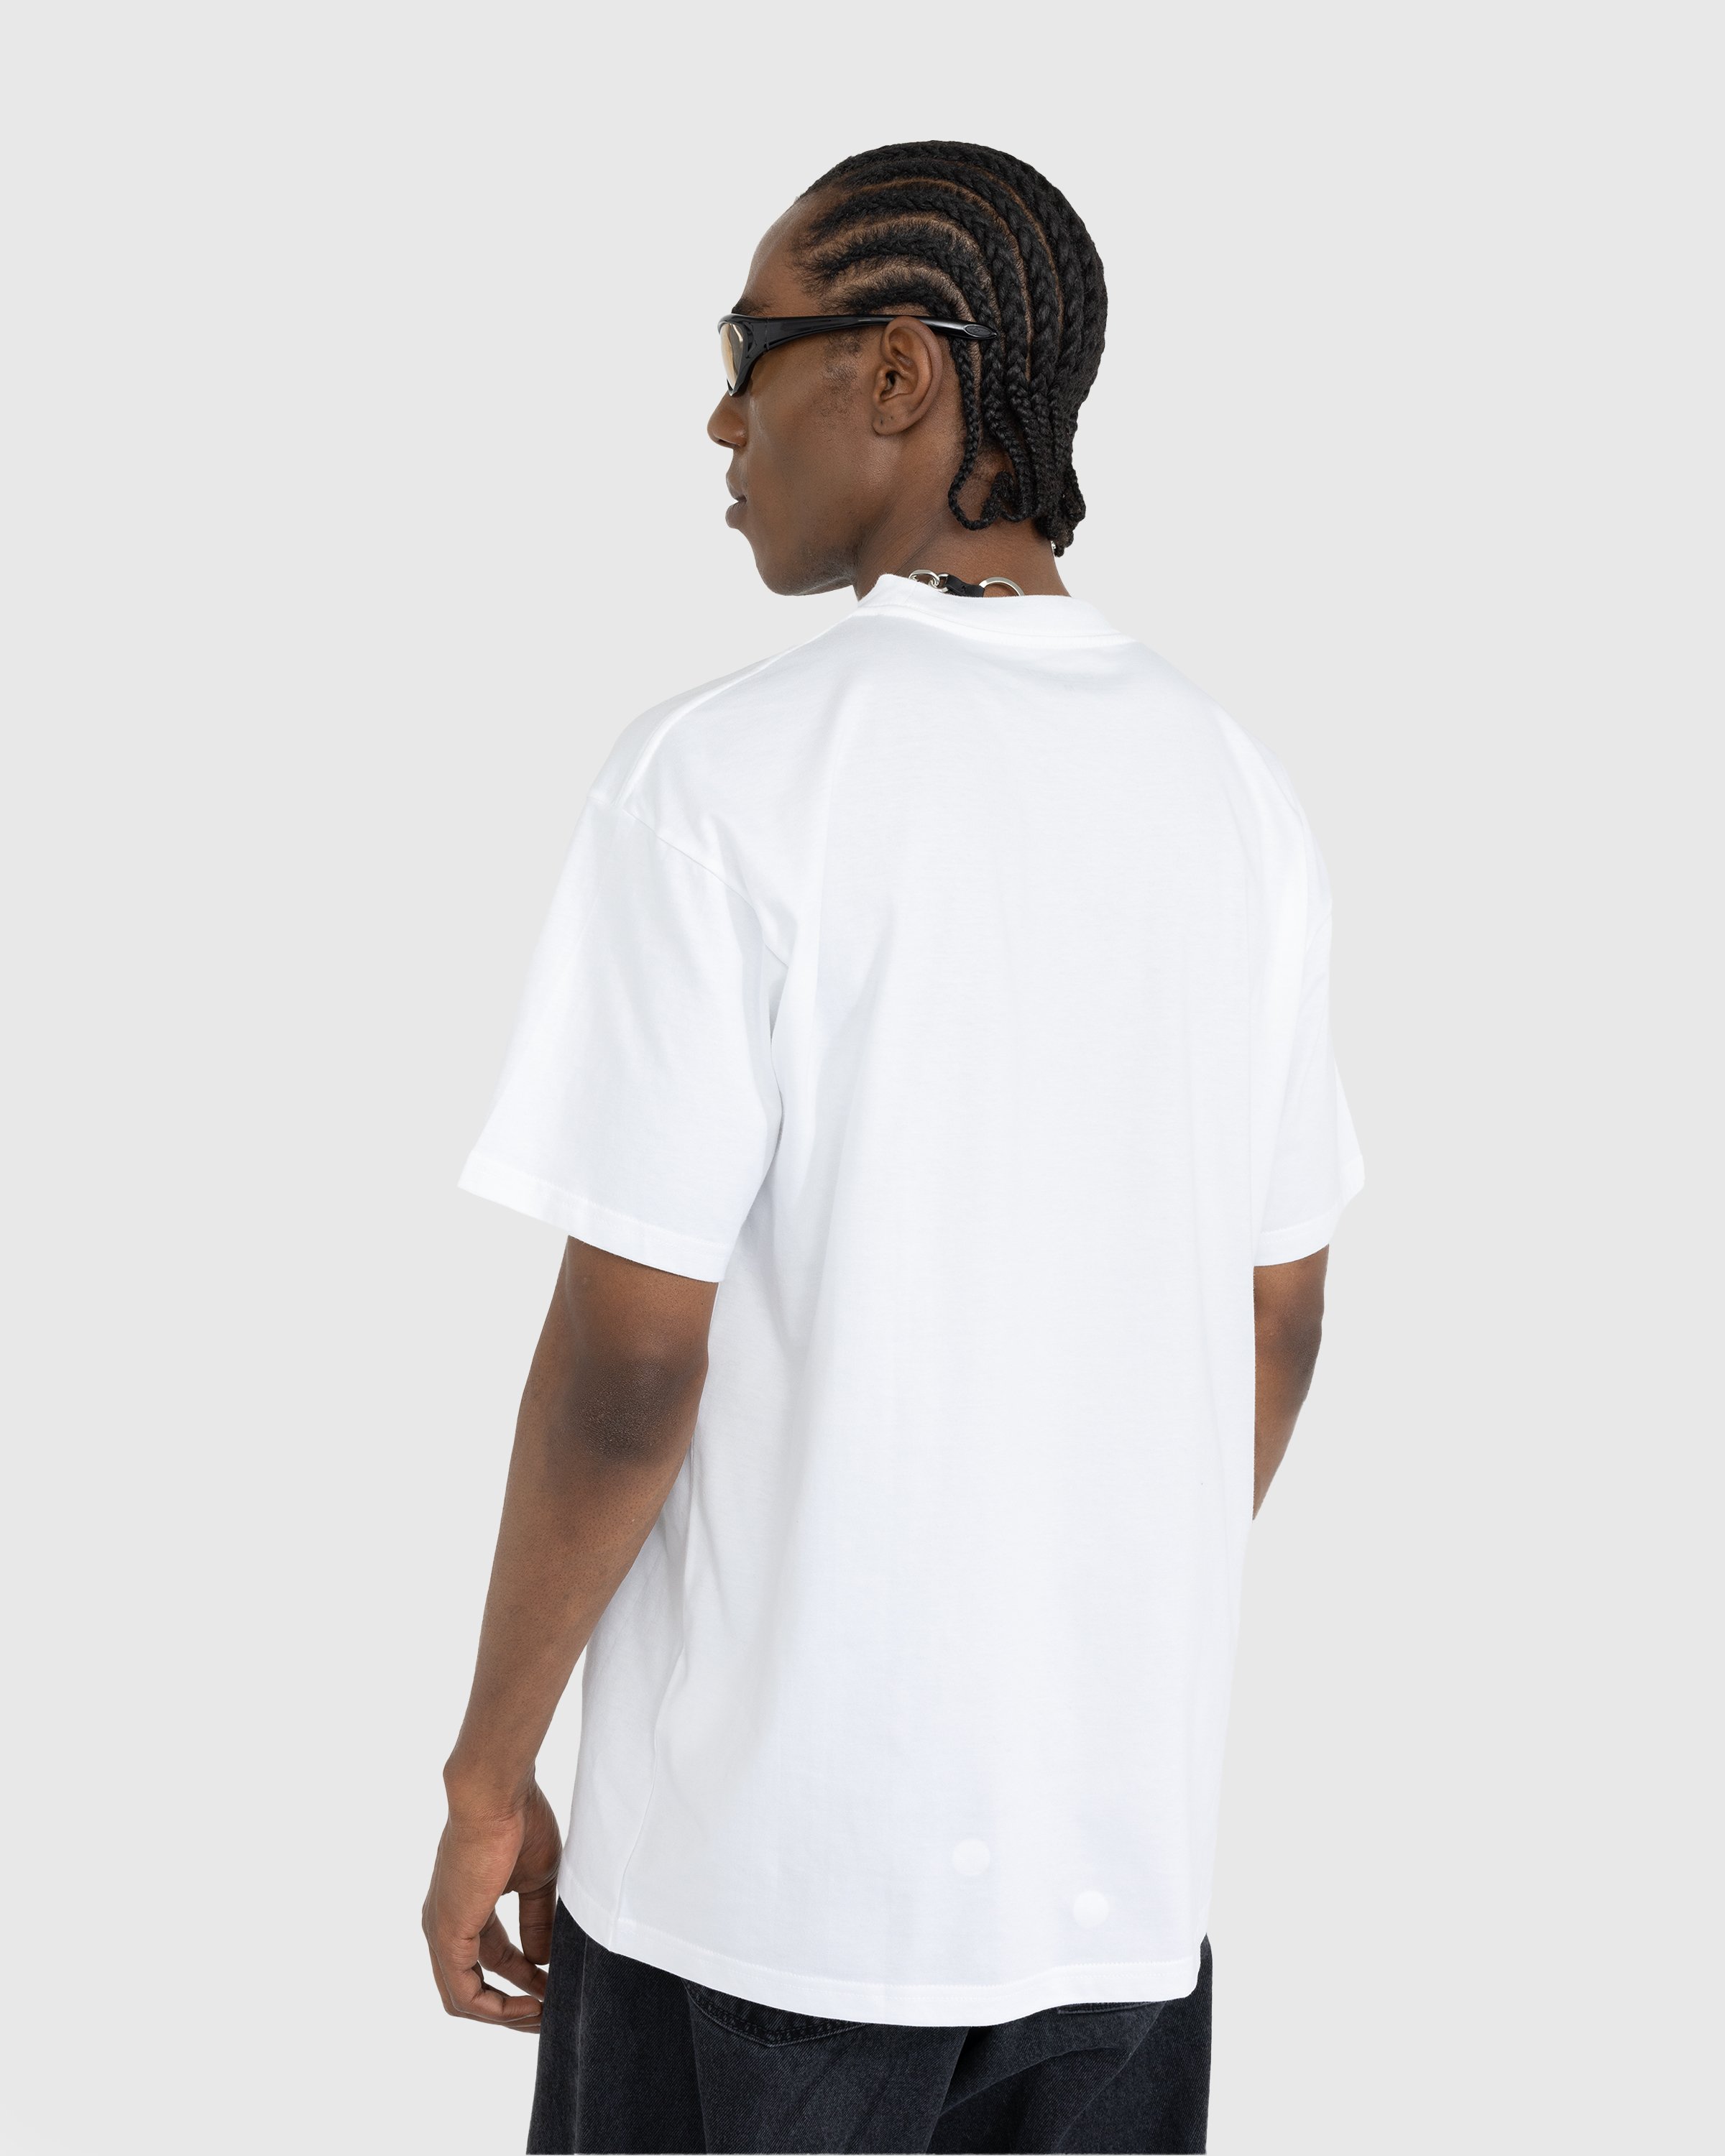 Carhartt WIP - S/S Love T-Shirt White - Clothing - White - Image 3